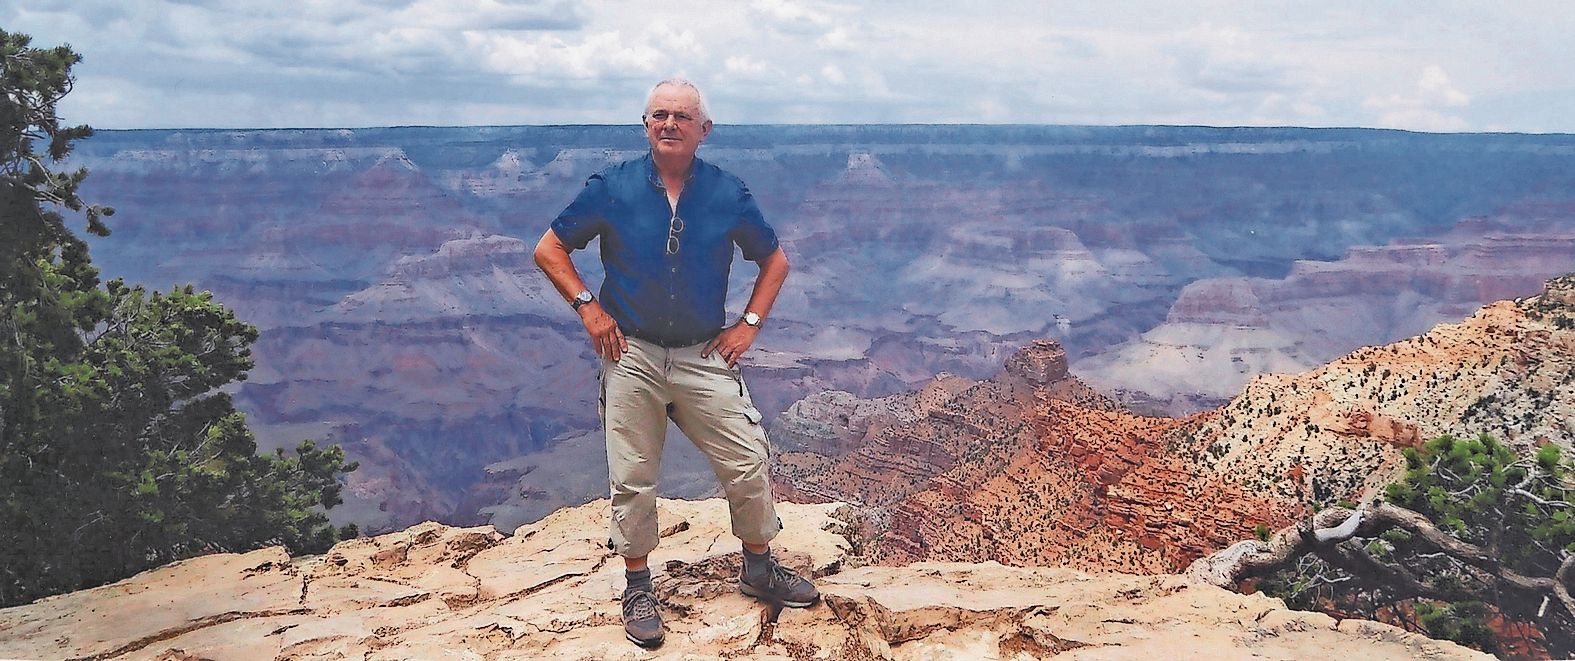 Welch' eine Kulisse: Aloys Ovelgönne im Jahr 2017 vor einem überaus imposanten Panorama im US-amerikanischen Grand Canyon. Foto: Sammlung Ovelgönne